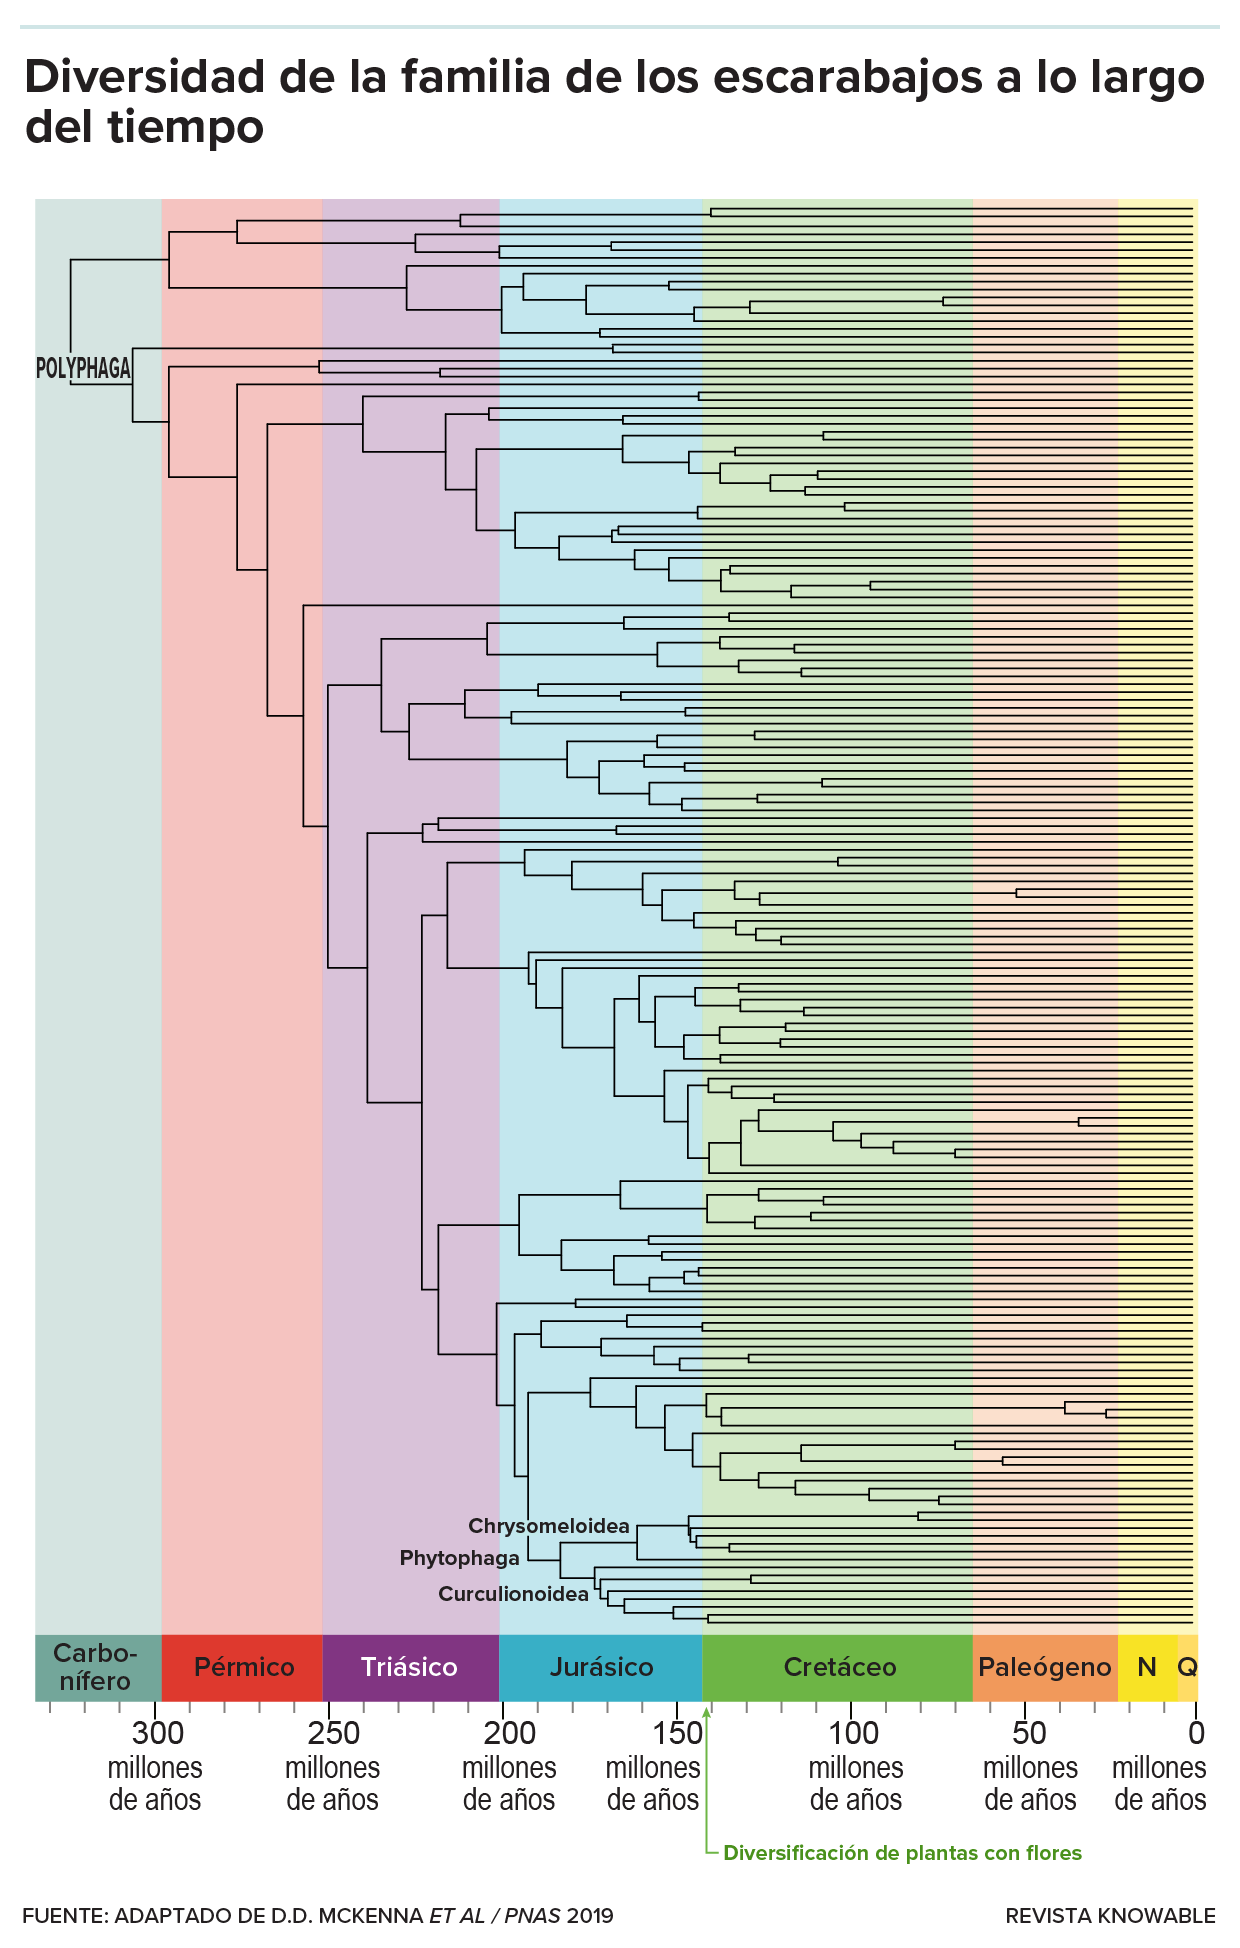 El gráfico muestra un árbol genealógico de la evolución de los escarabajos durante los últimos 350 millones de años. Las familias de escarabajos se ramificaron en diferentes grupos, con una densidad cada vez mayor de ramas que se desarrolló con la expansión de las plantas con flores.